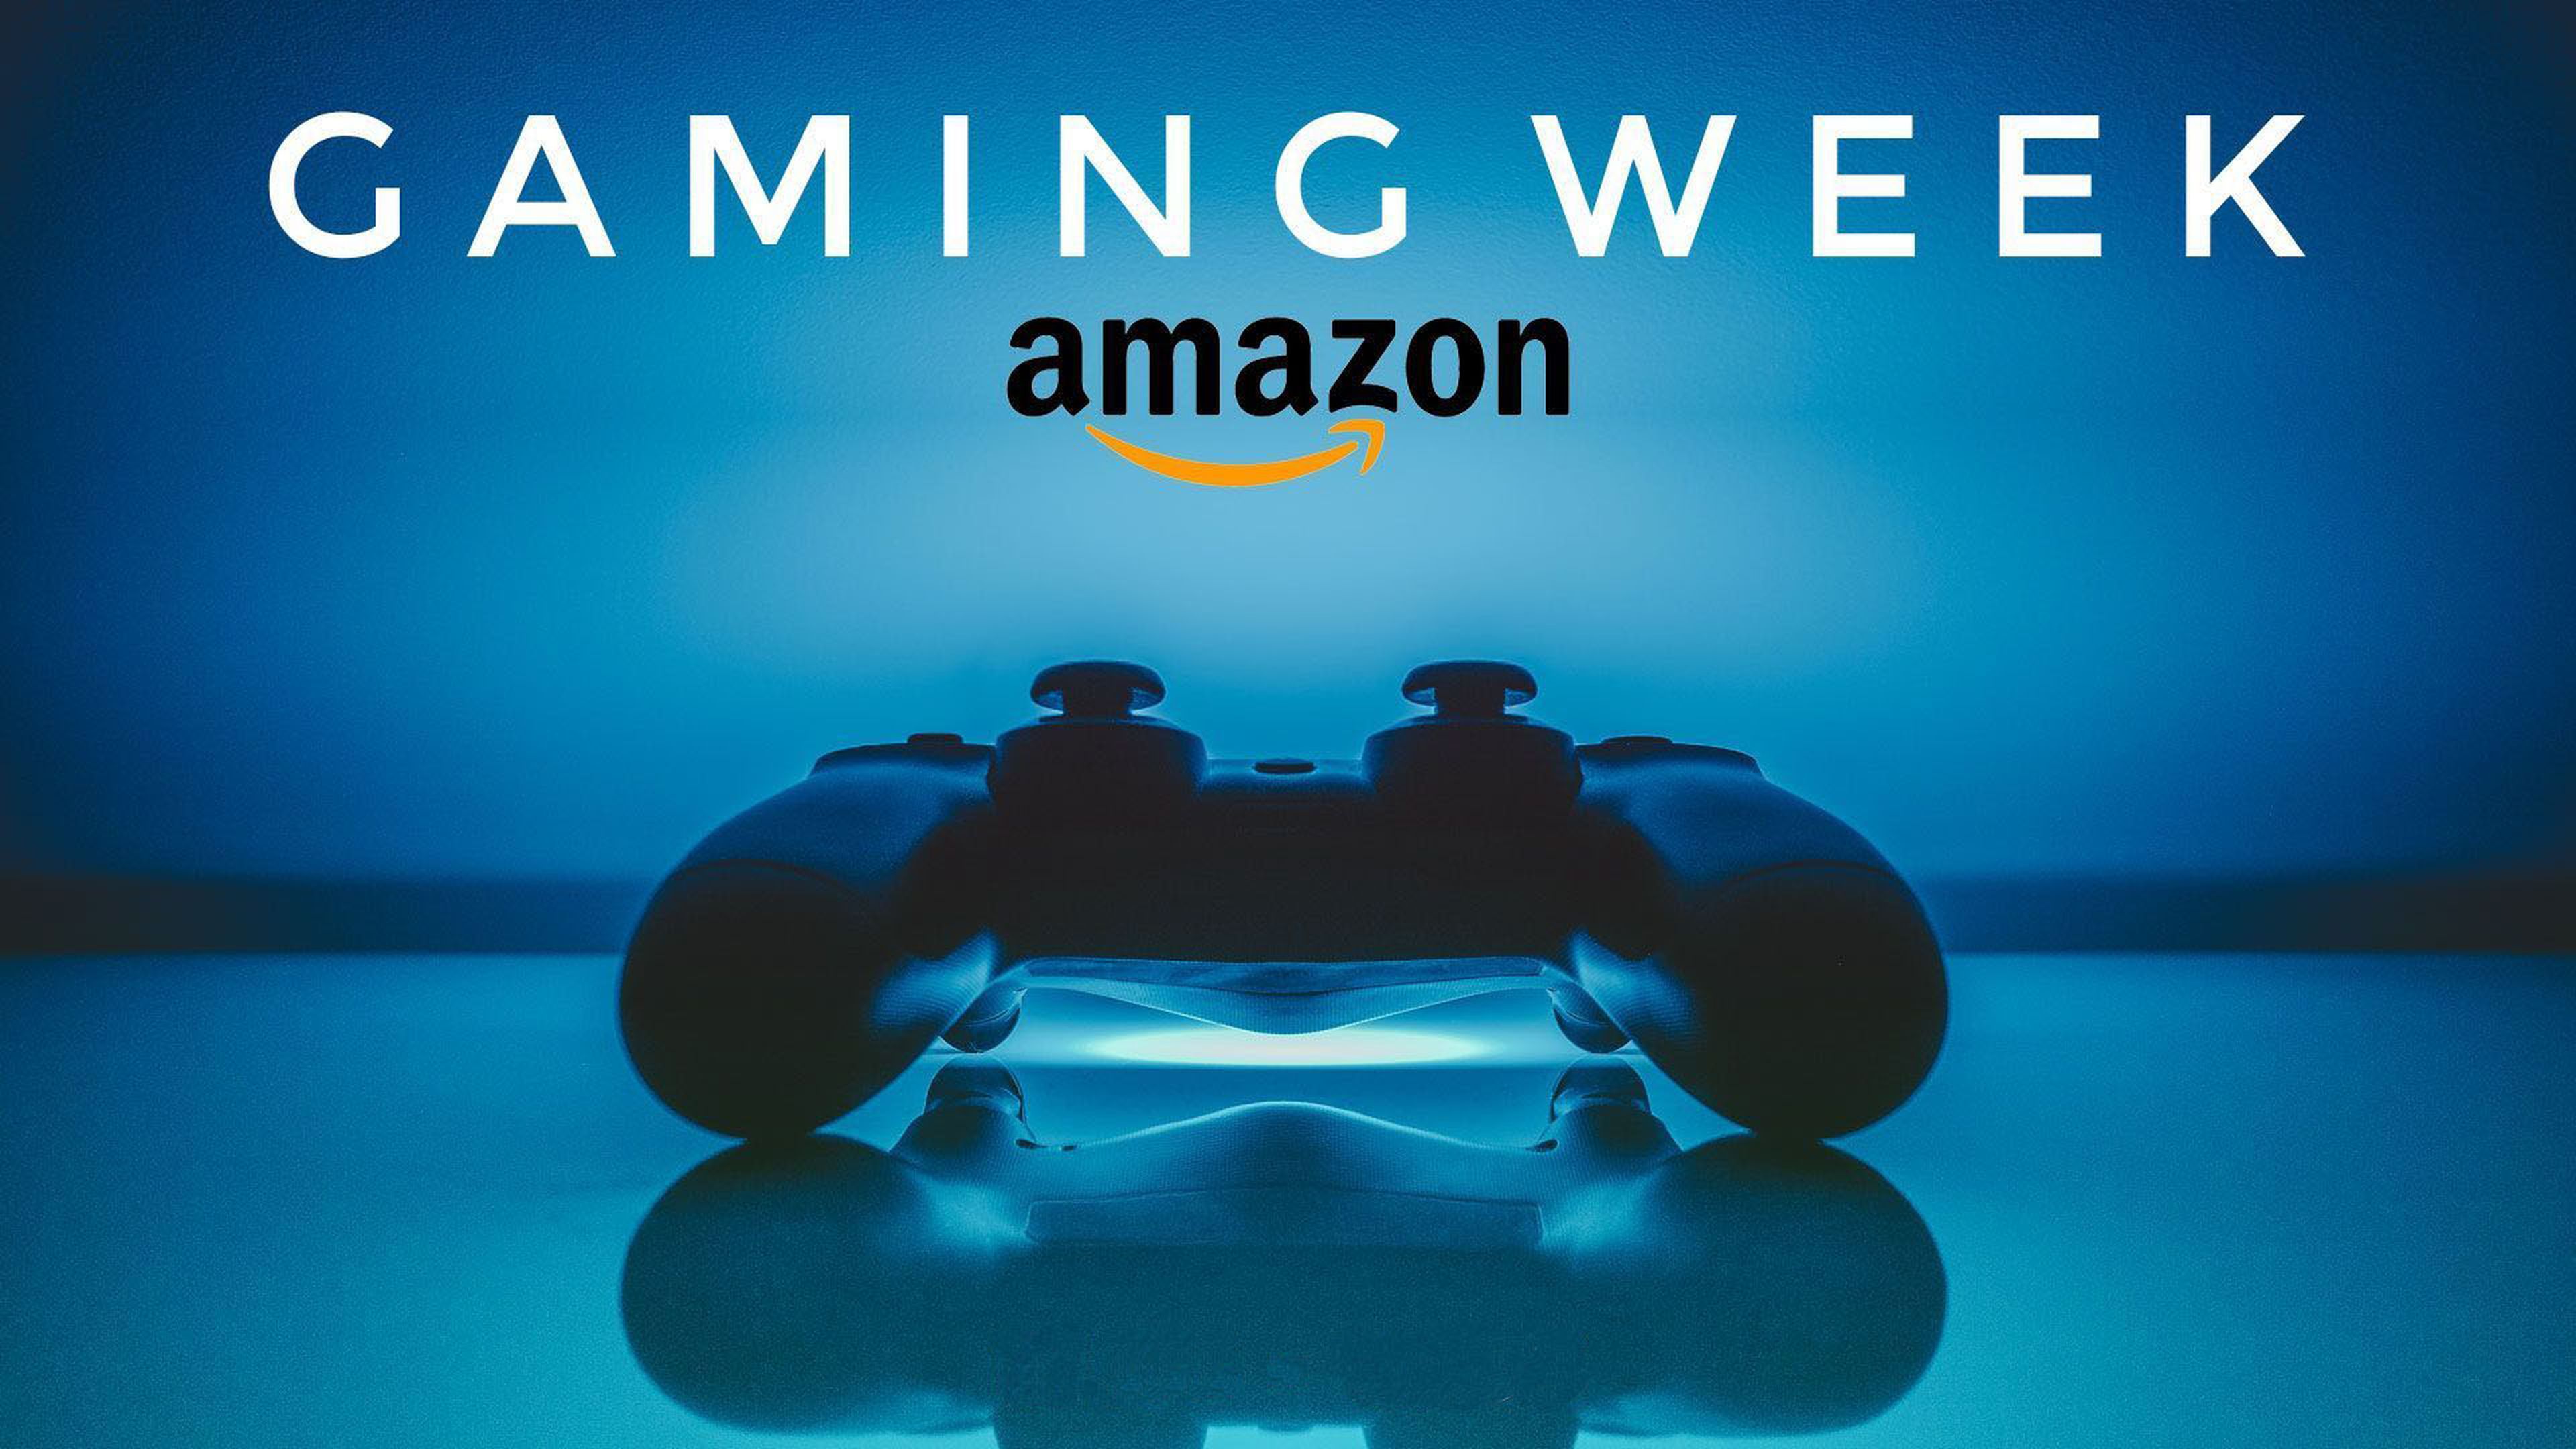 Amazon Gaming Week 2019